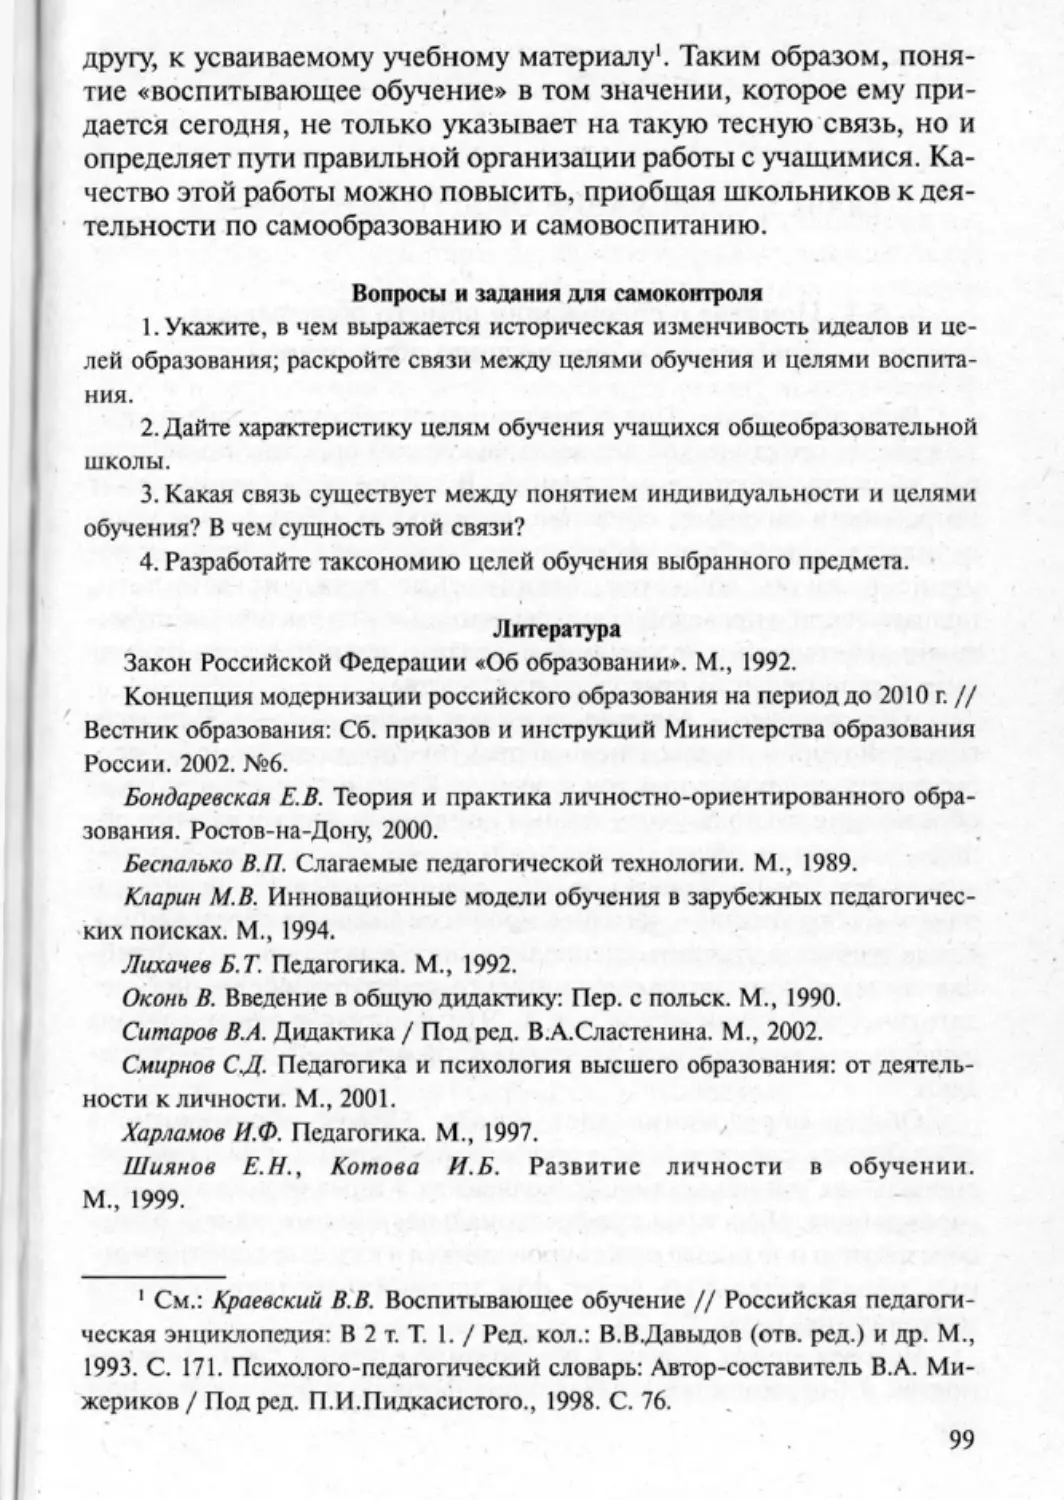 Загрекова Л.В., Николаева В.В - 0100